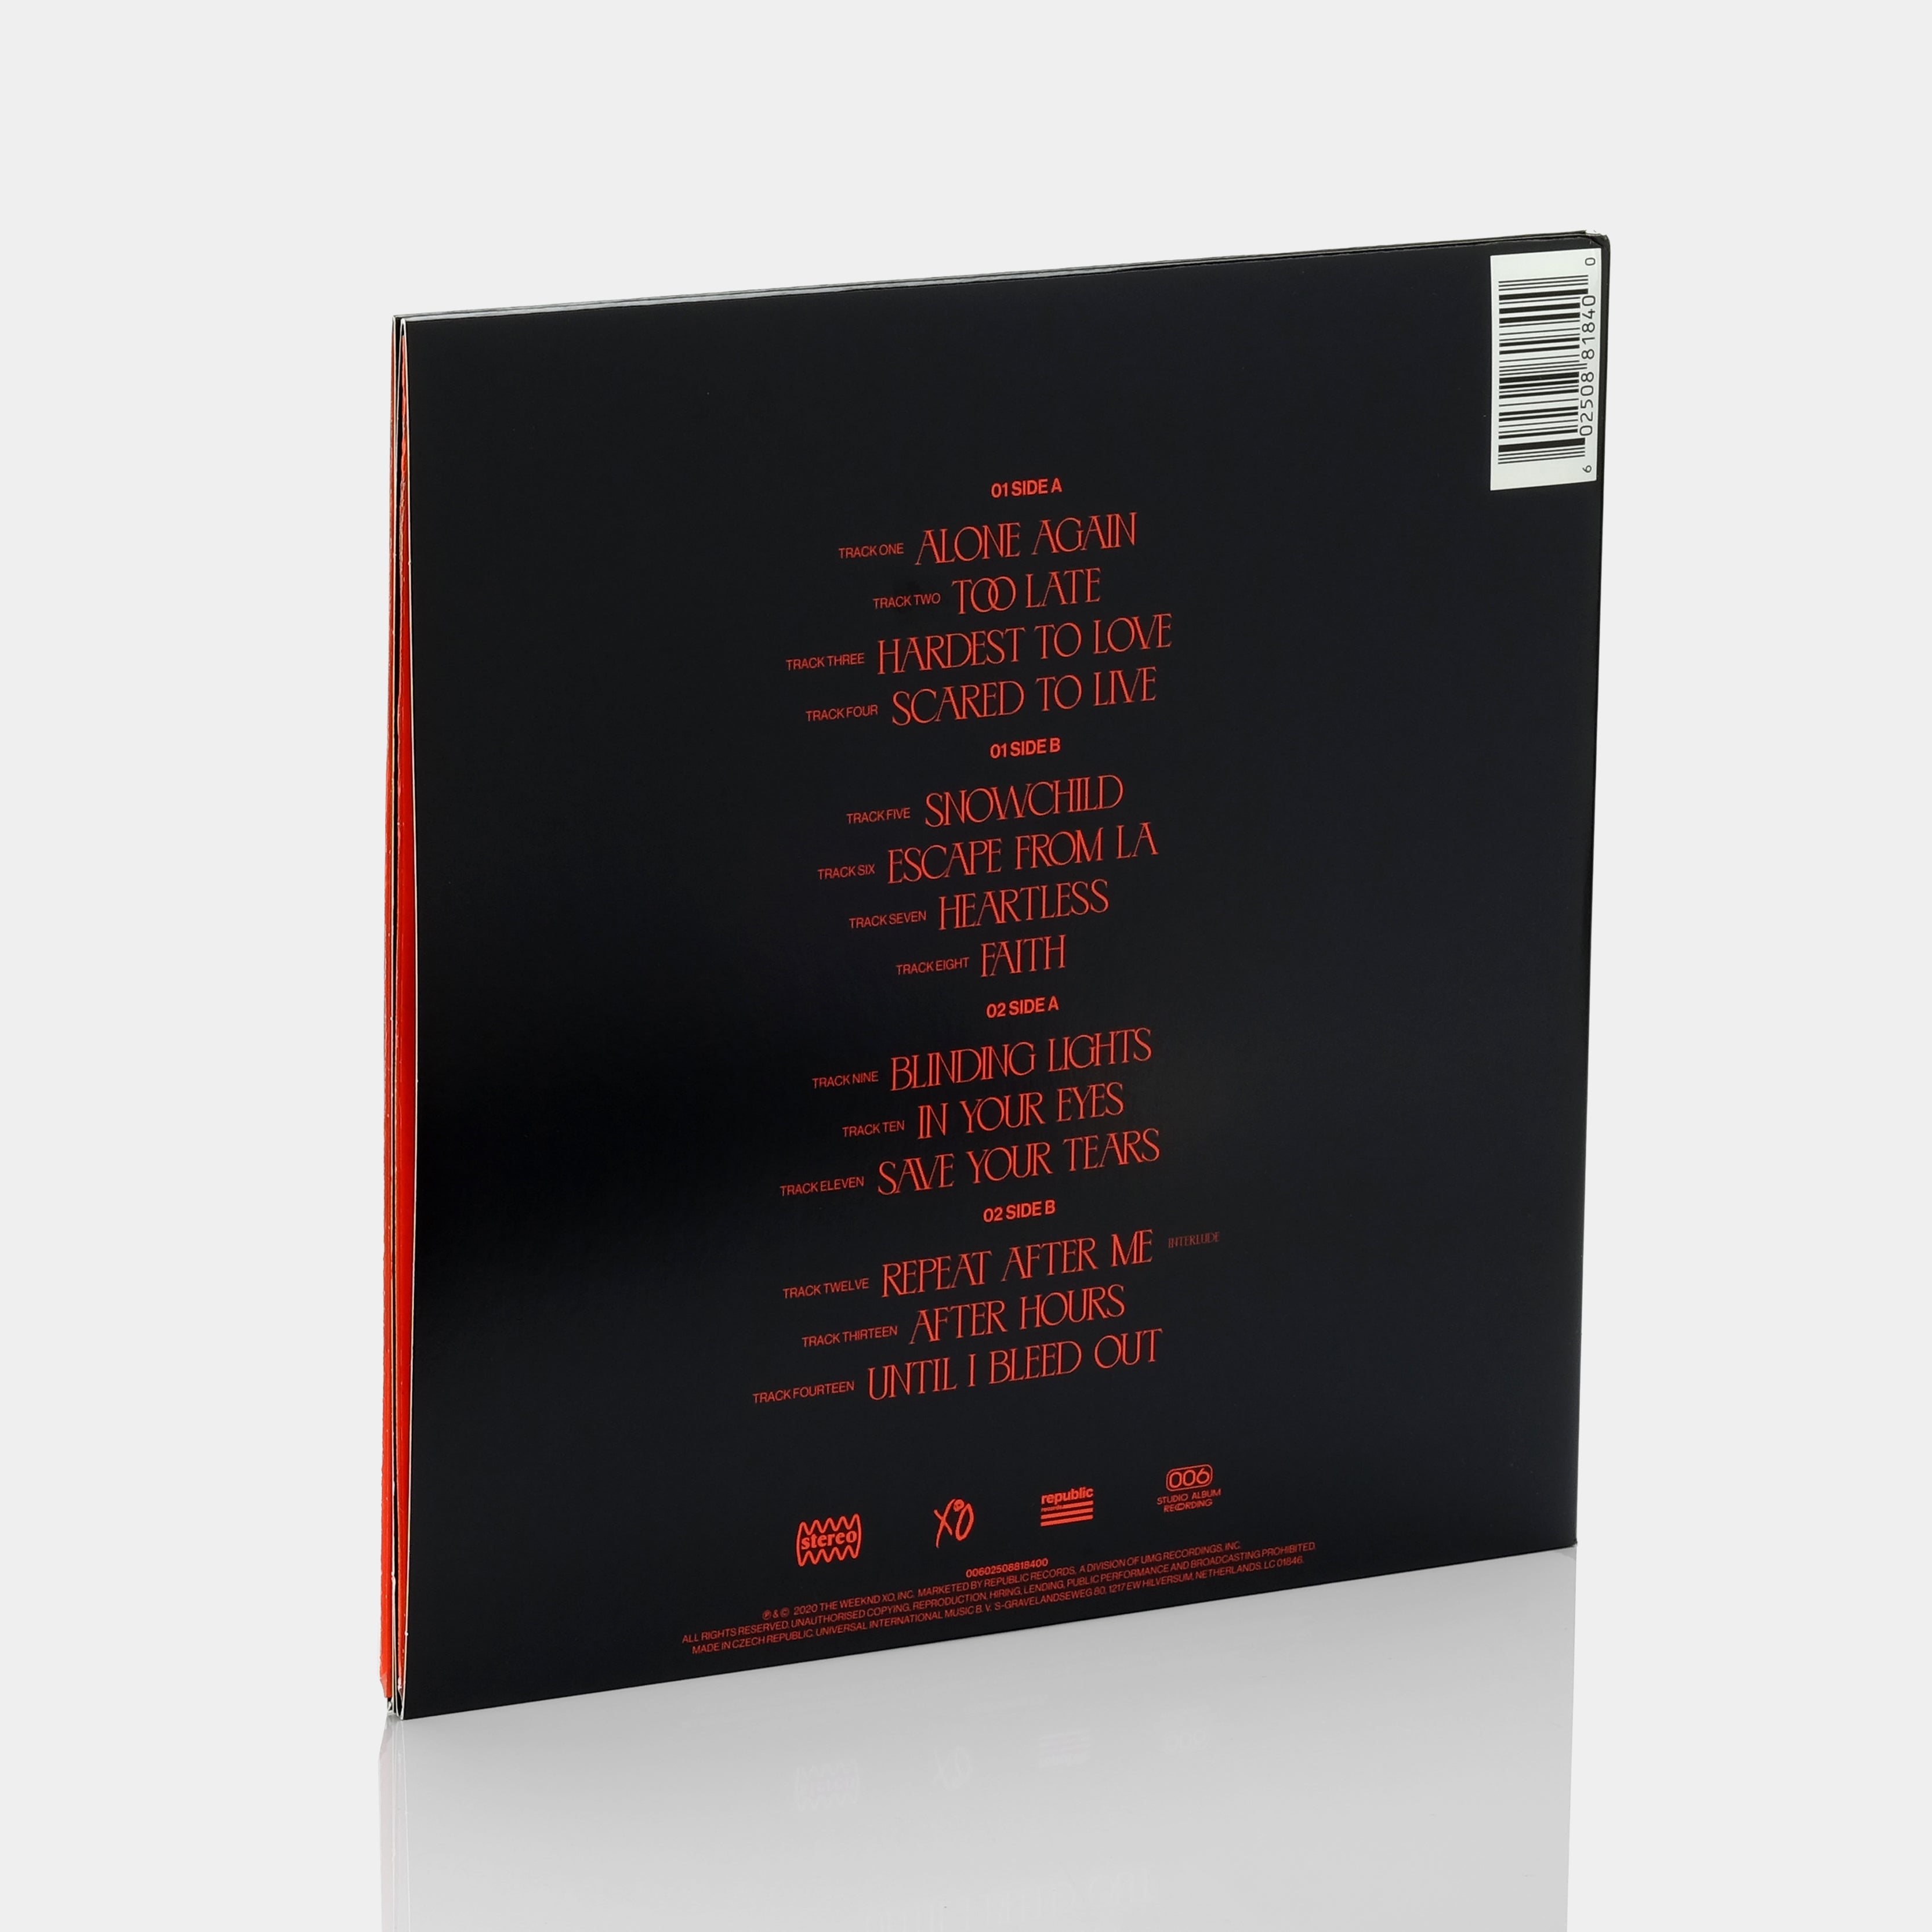 最安値で買 新品 The Weeknd After Hours レコード